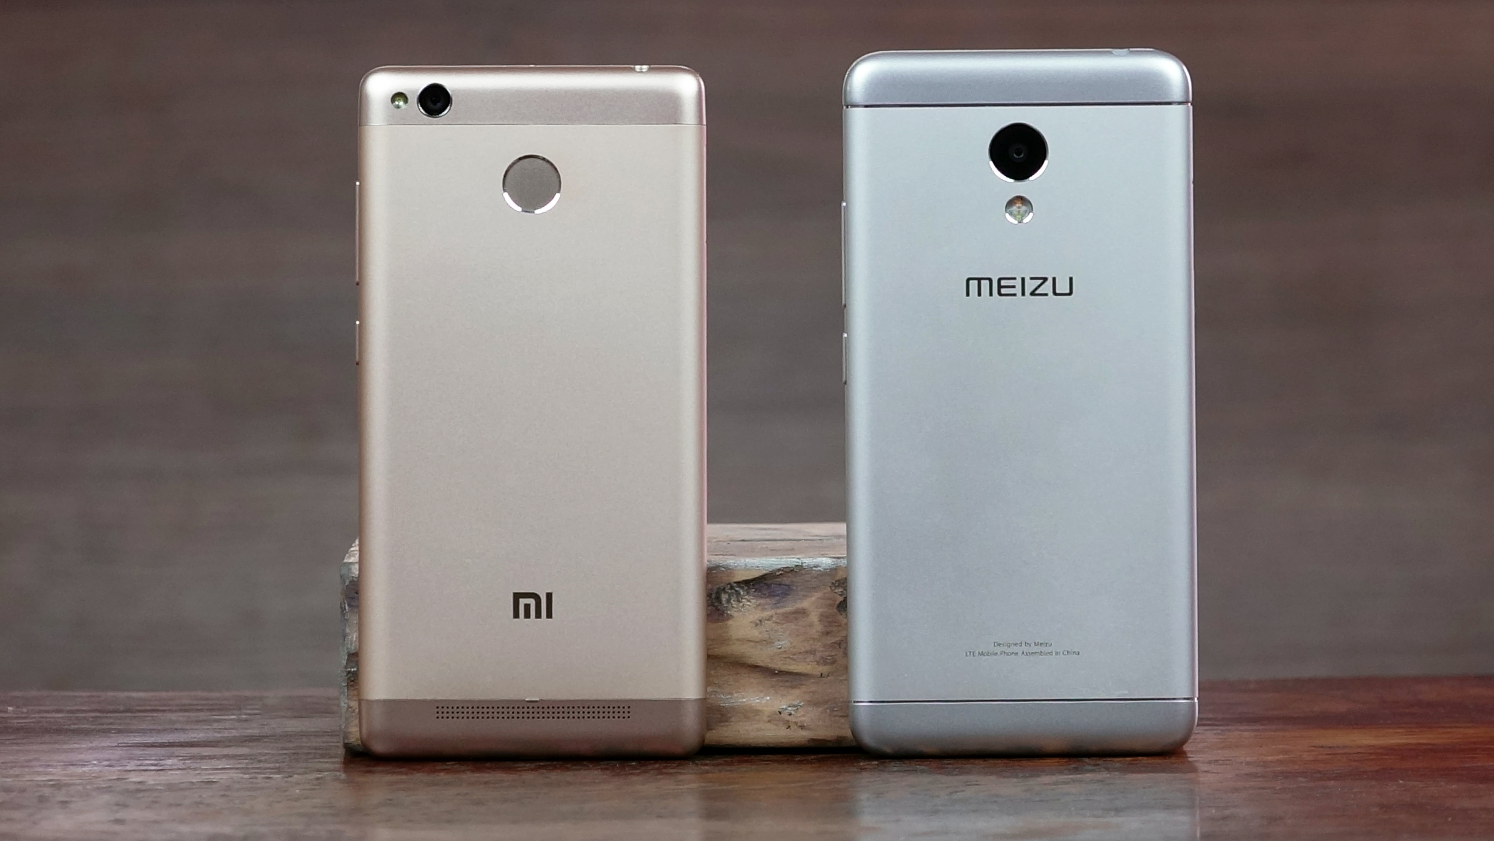 Рис. 1. Модели Xiaomi и Meizu похожи по параметрам, поэтому и являются конкурентами.